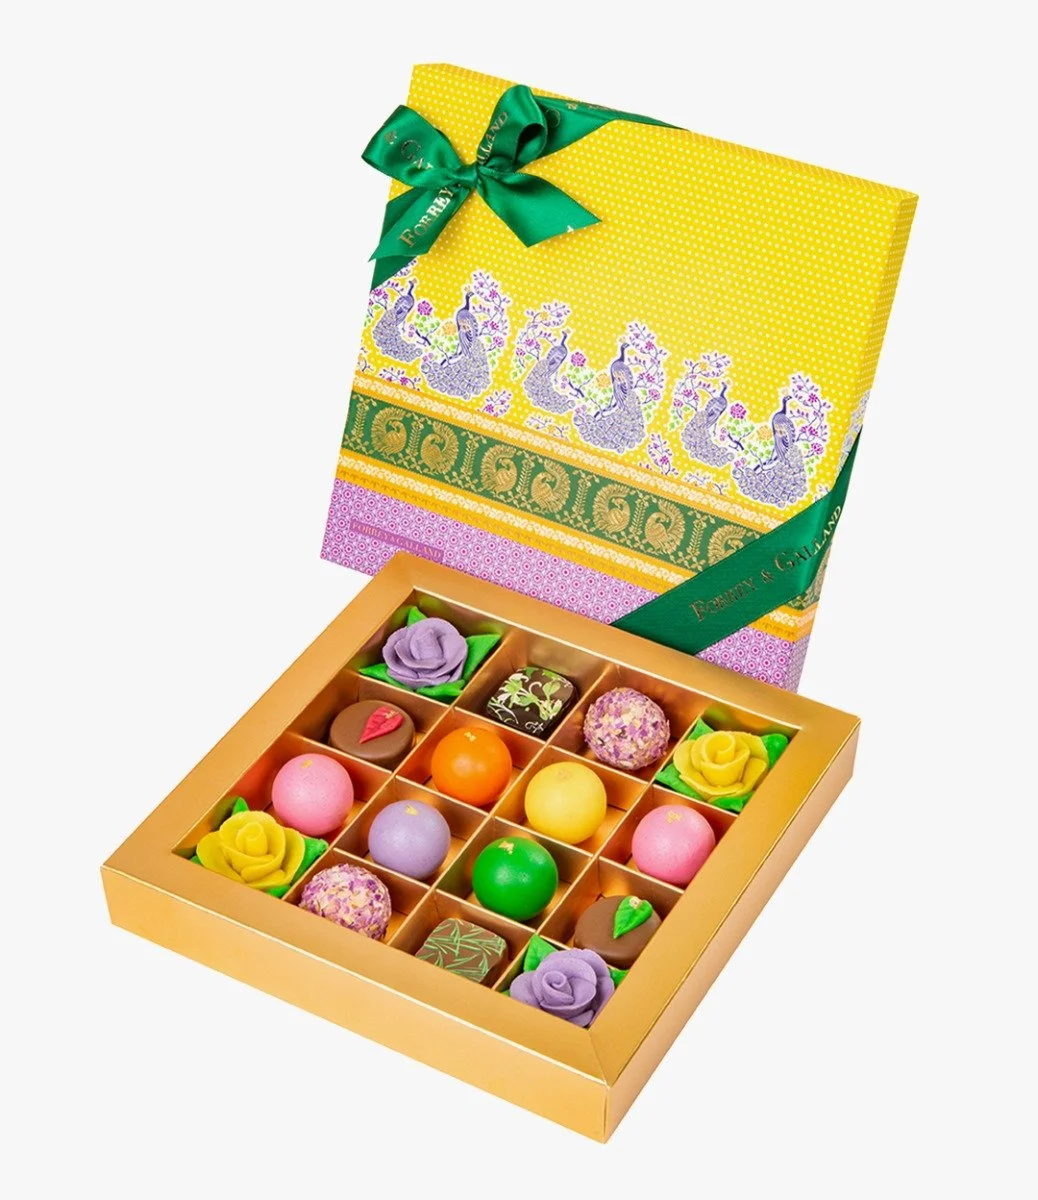 Assorted Diwali Chocolates Box - 16 pcs by Forrey & Galland